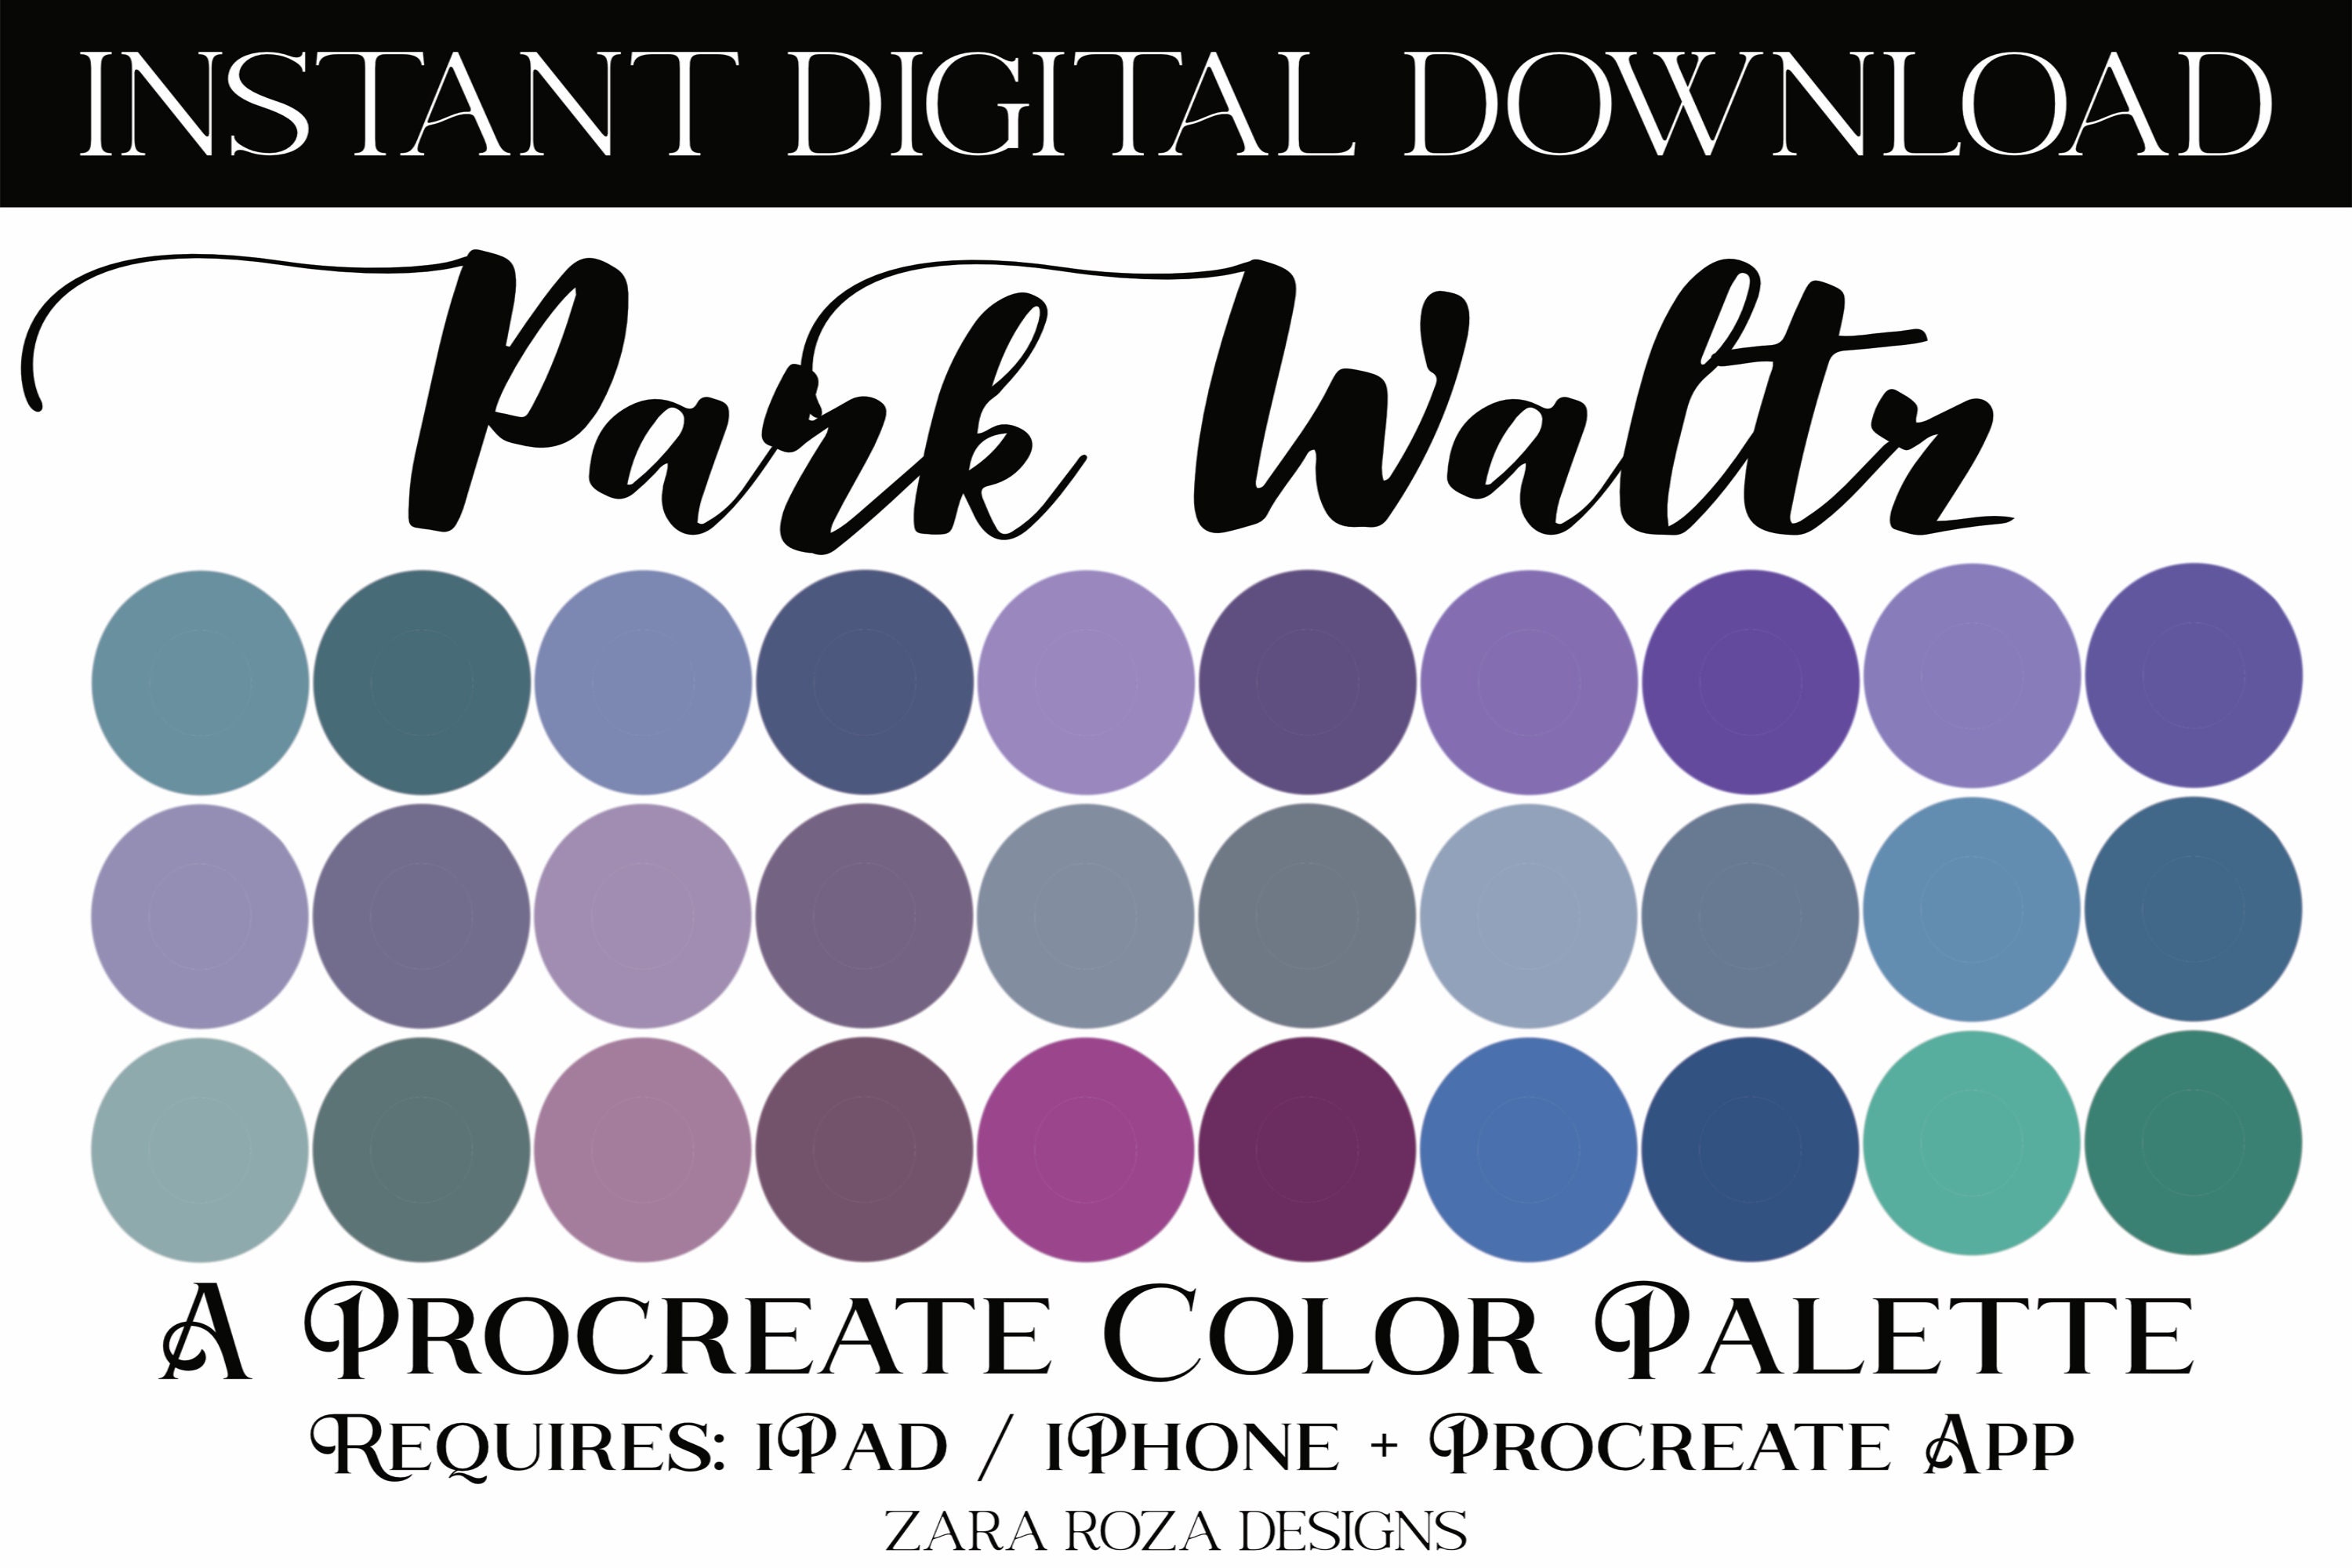 20 Procreate Color Palette Bundle Pack VOL. 31 Set Retro - Etsy Australia